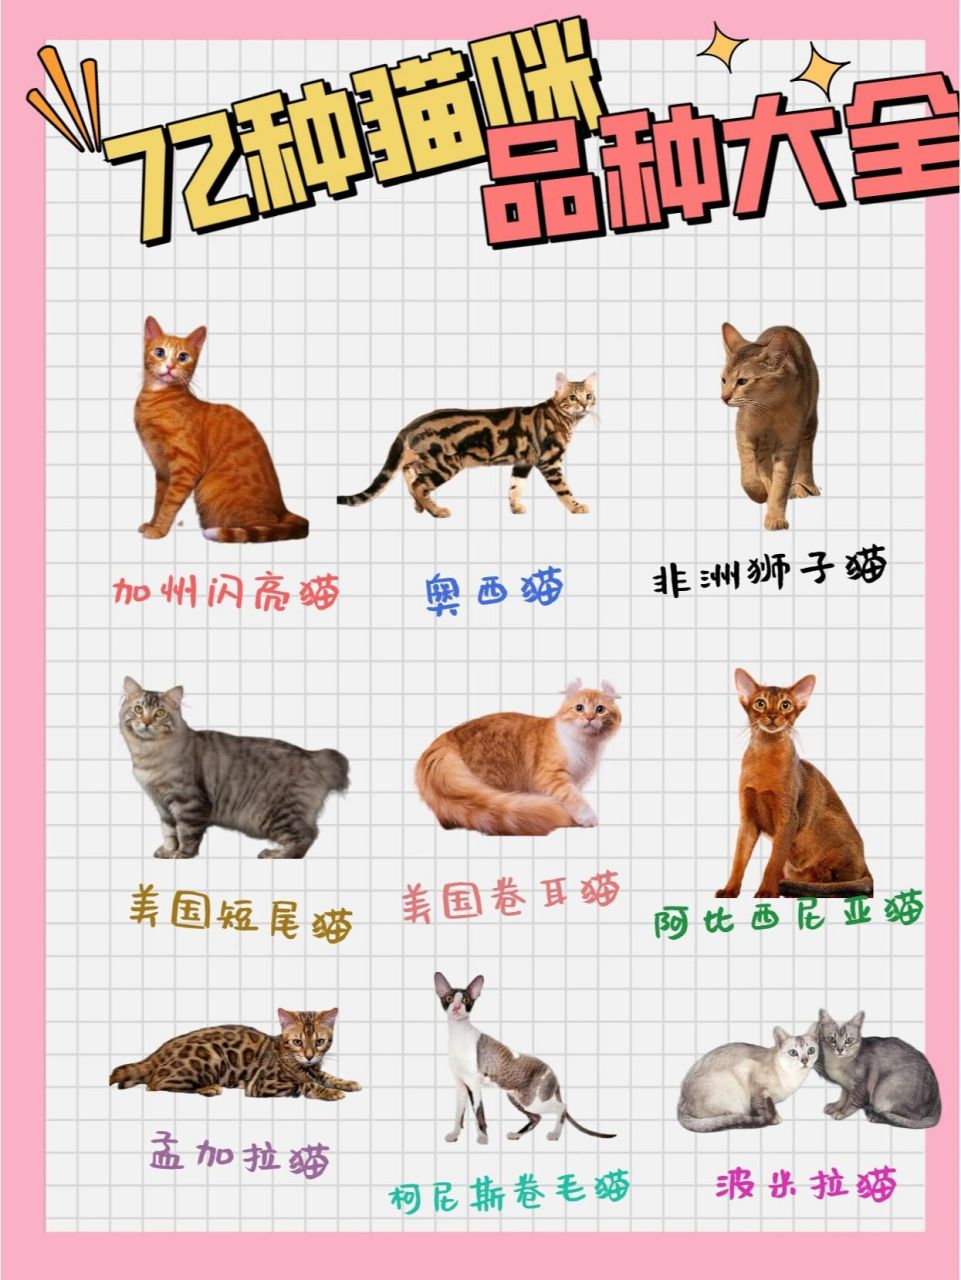 72种猫咪品种大全图片及介绍1 